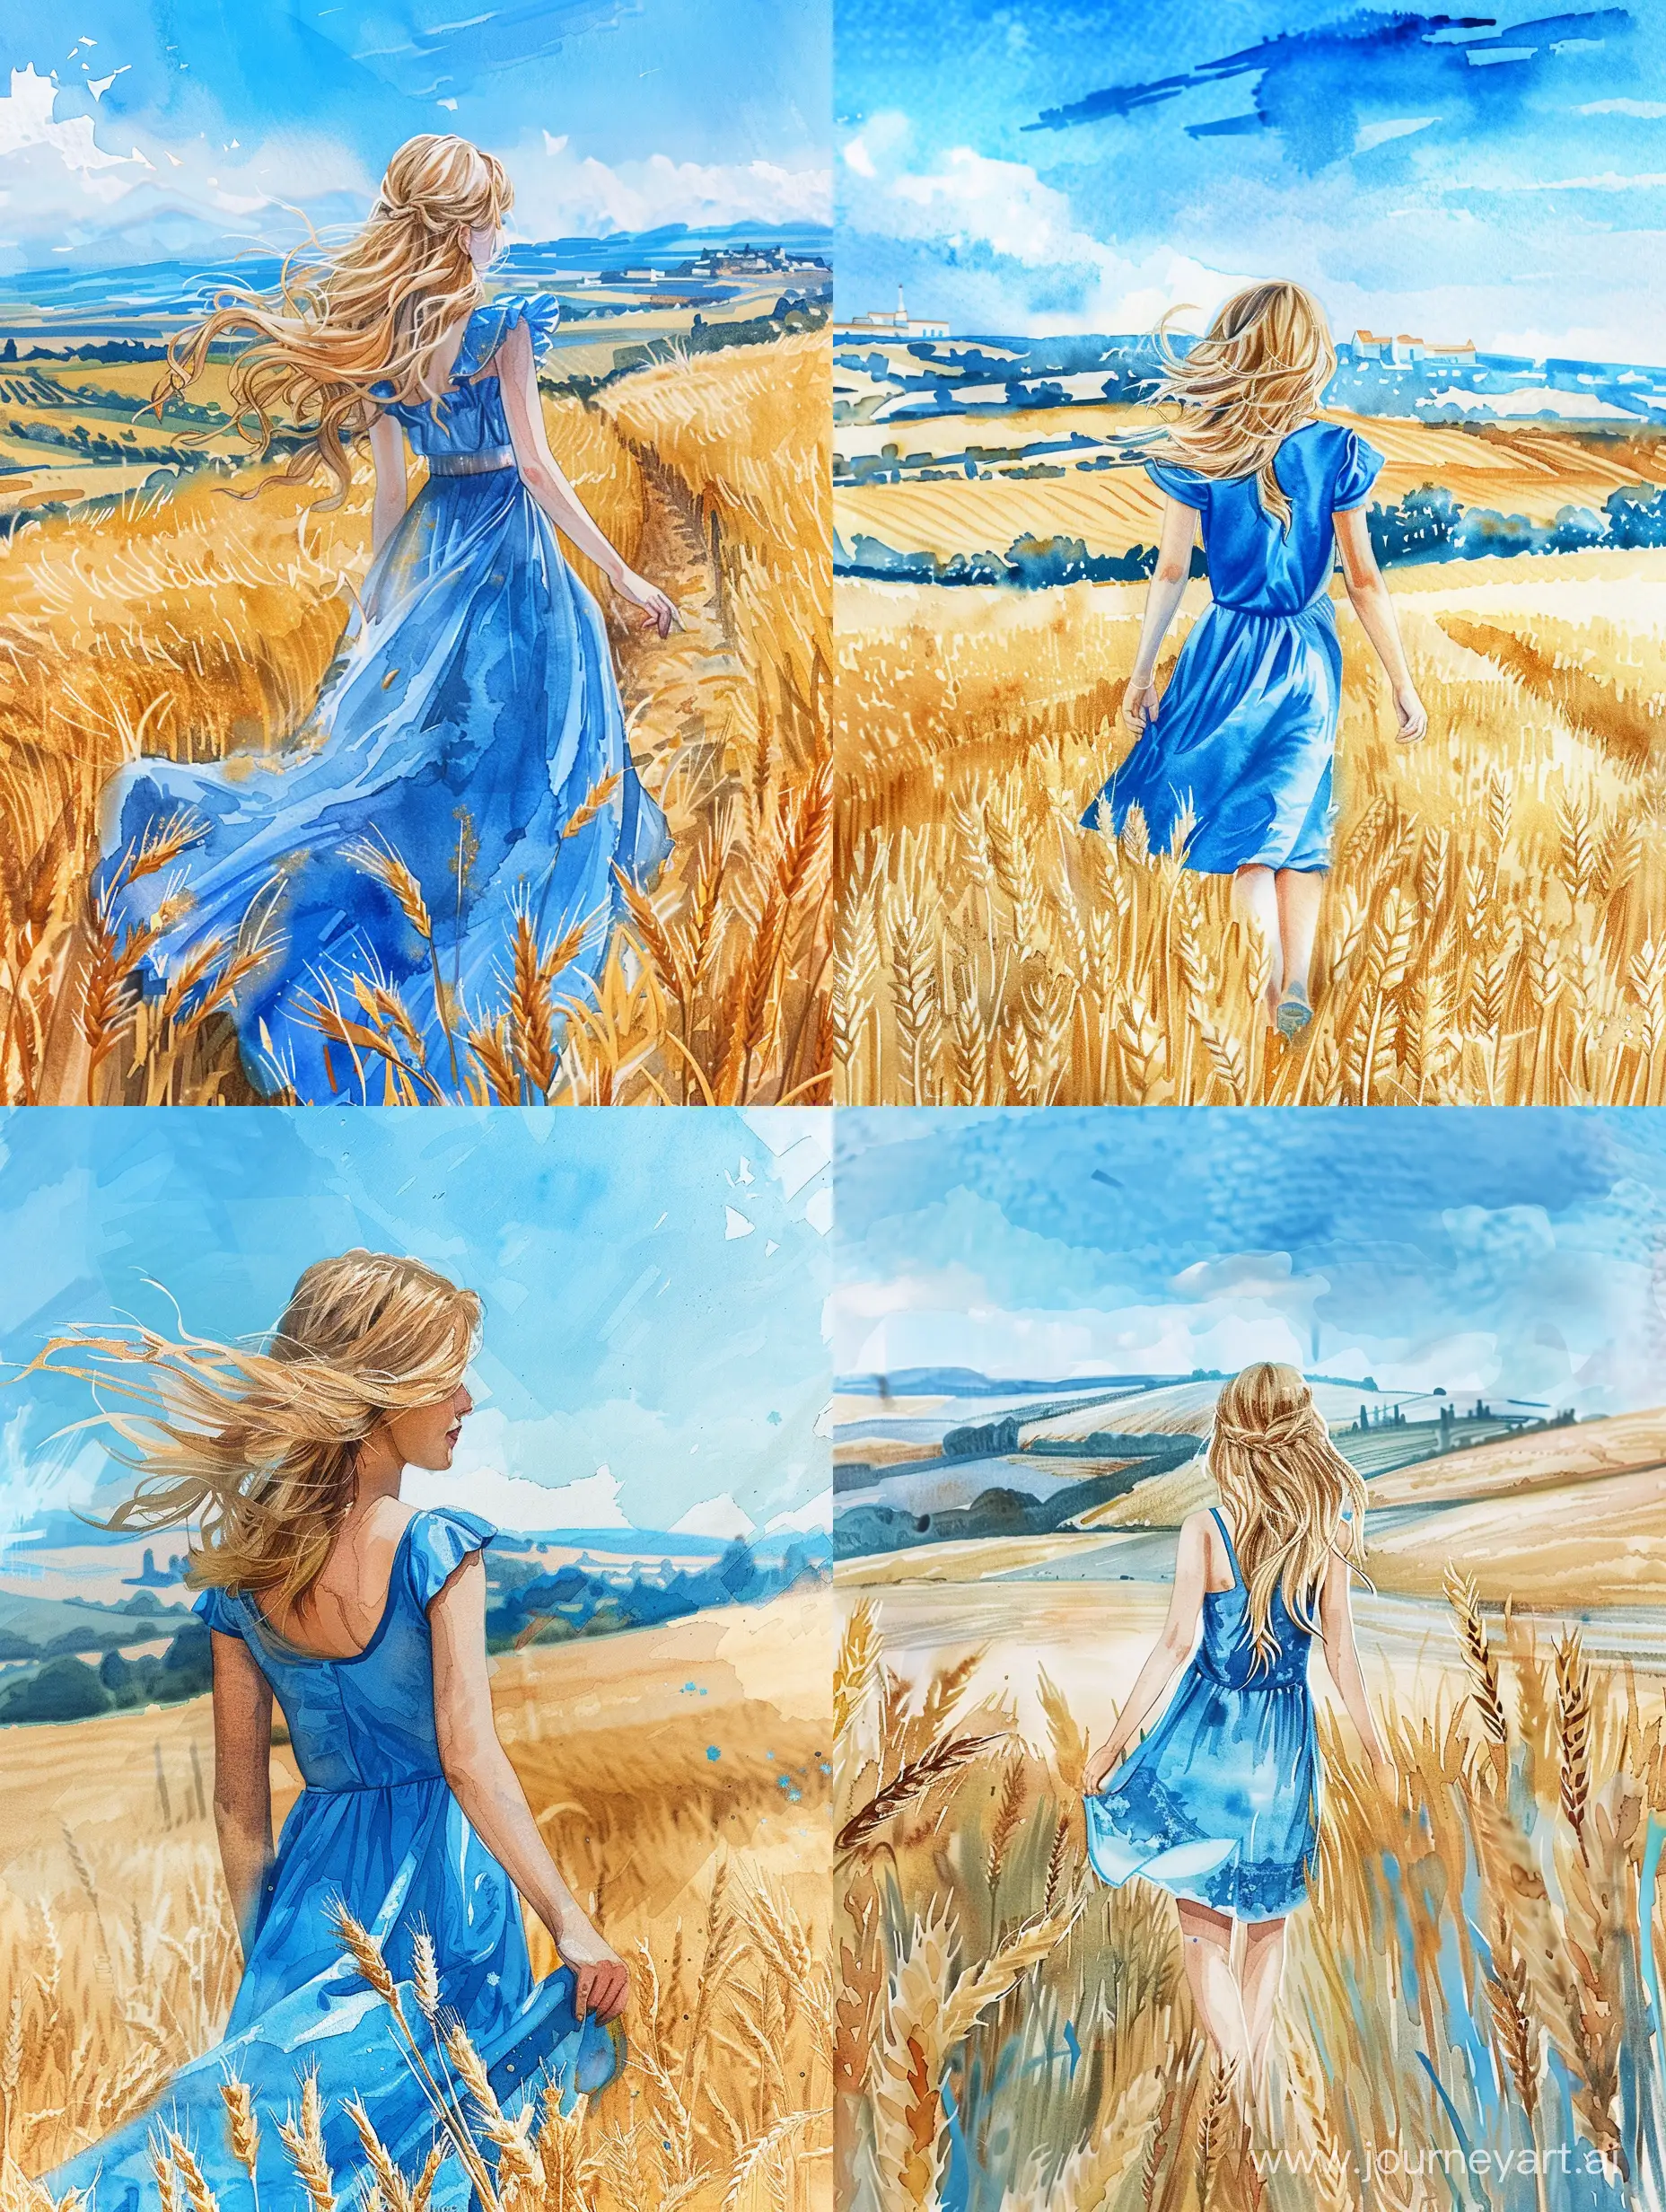 невероятно красивая девушка в полный рост, с русыми волосами, в синем платье идет по пшеничному полю, красивый пейзаж на фоне, синее небо, высокое разрешение, эстетично, красиво, яркое освещение, акварель